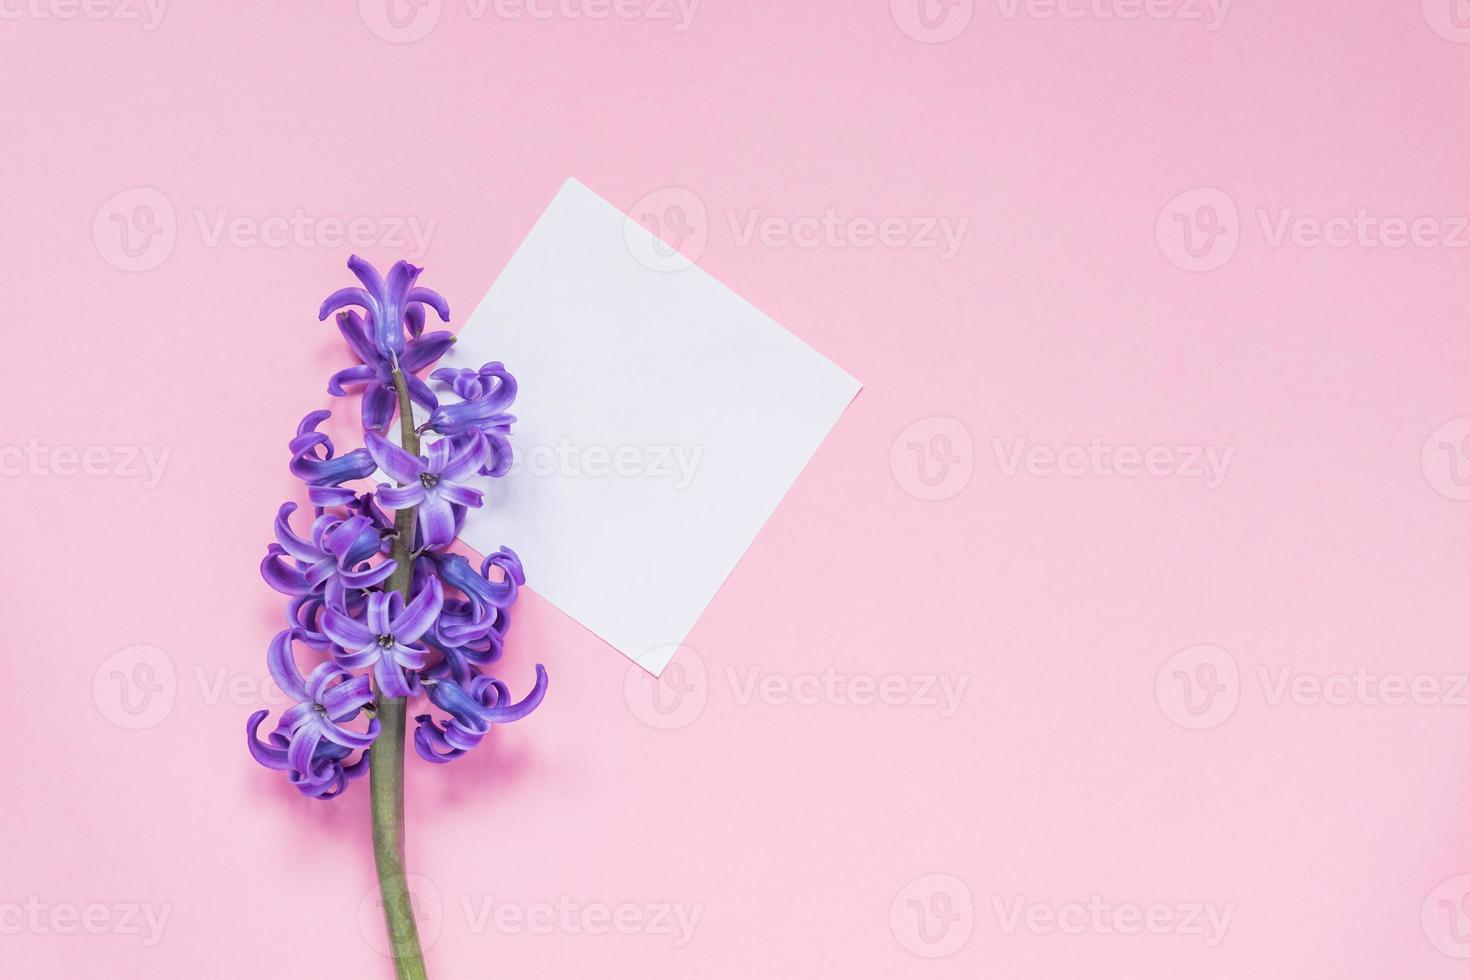 Bosquejo. etiqueta de papel epty con jacinto lila sobre fondo rosa pastel. vista superior, plano con espacio de copia foto